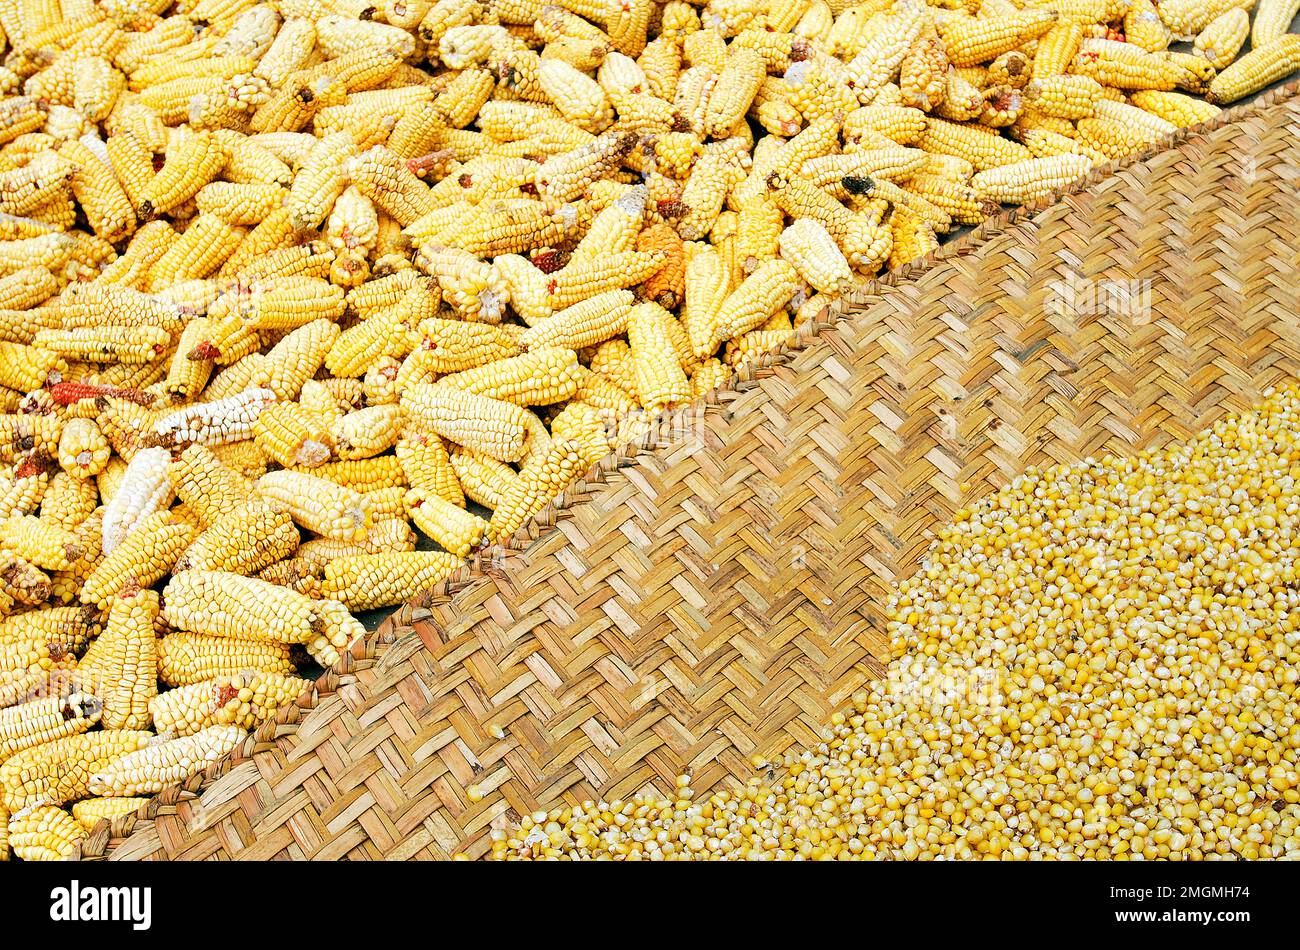 Cosecha y secado de maíz en una granja. Andes. Ecuador. Foto de stock